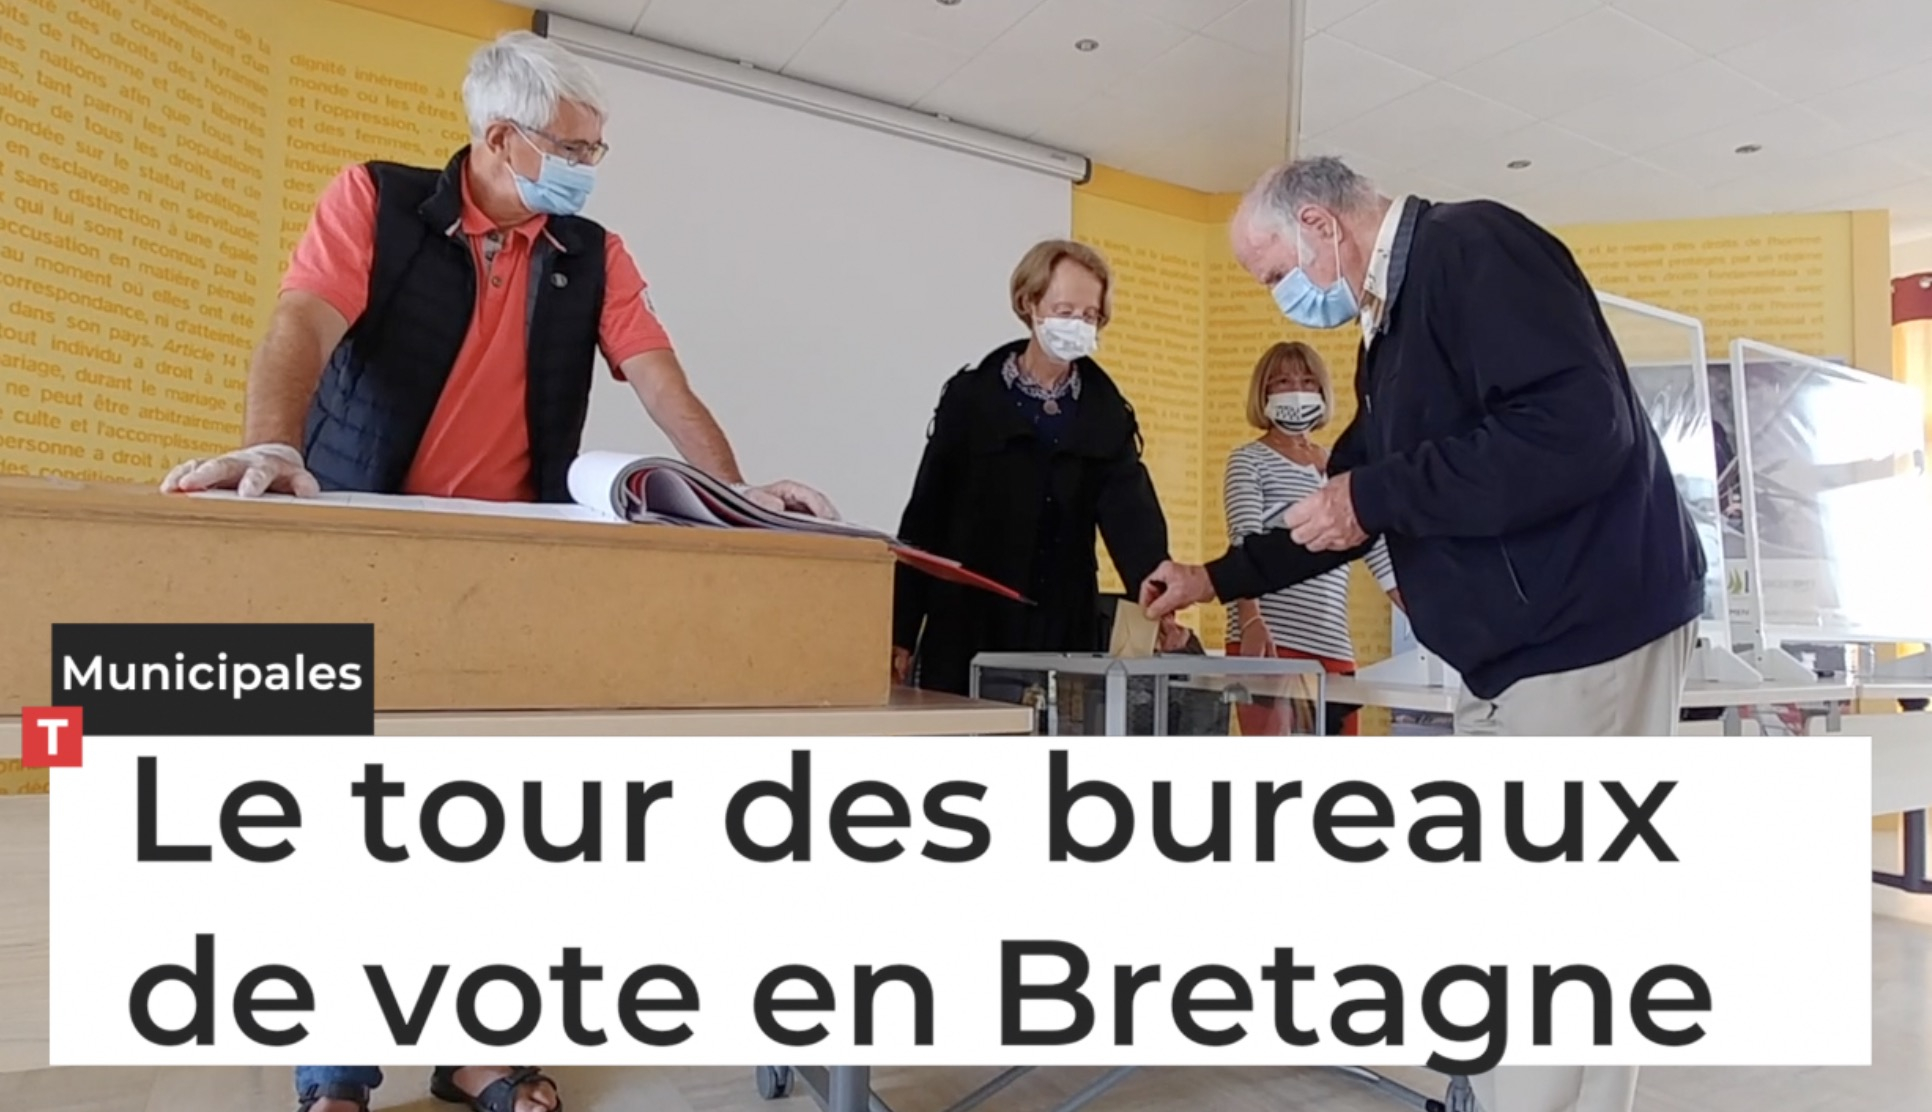 Municipales. Le tour des bureaux de vote en Bretagne (Le Télégramme)